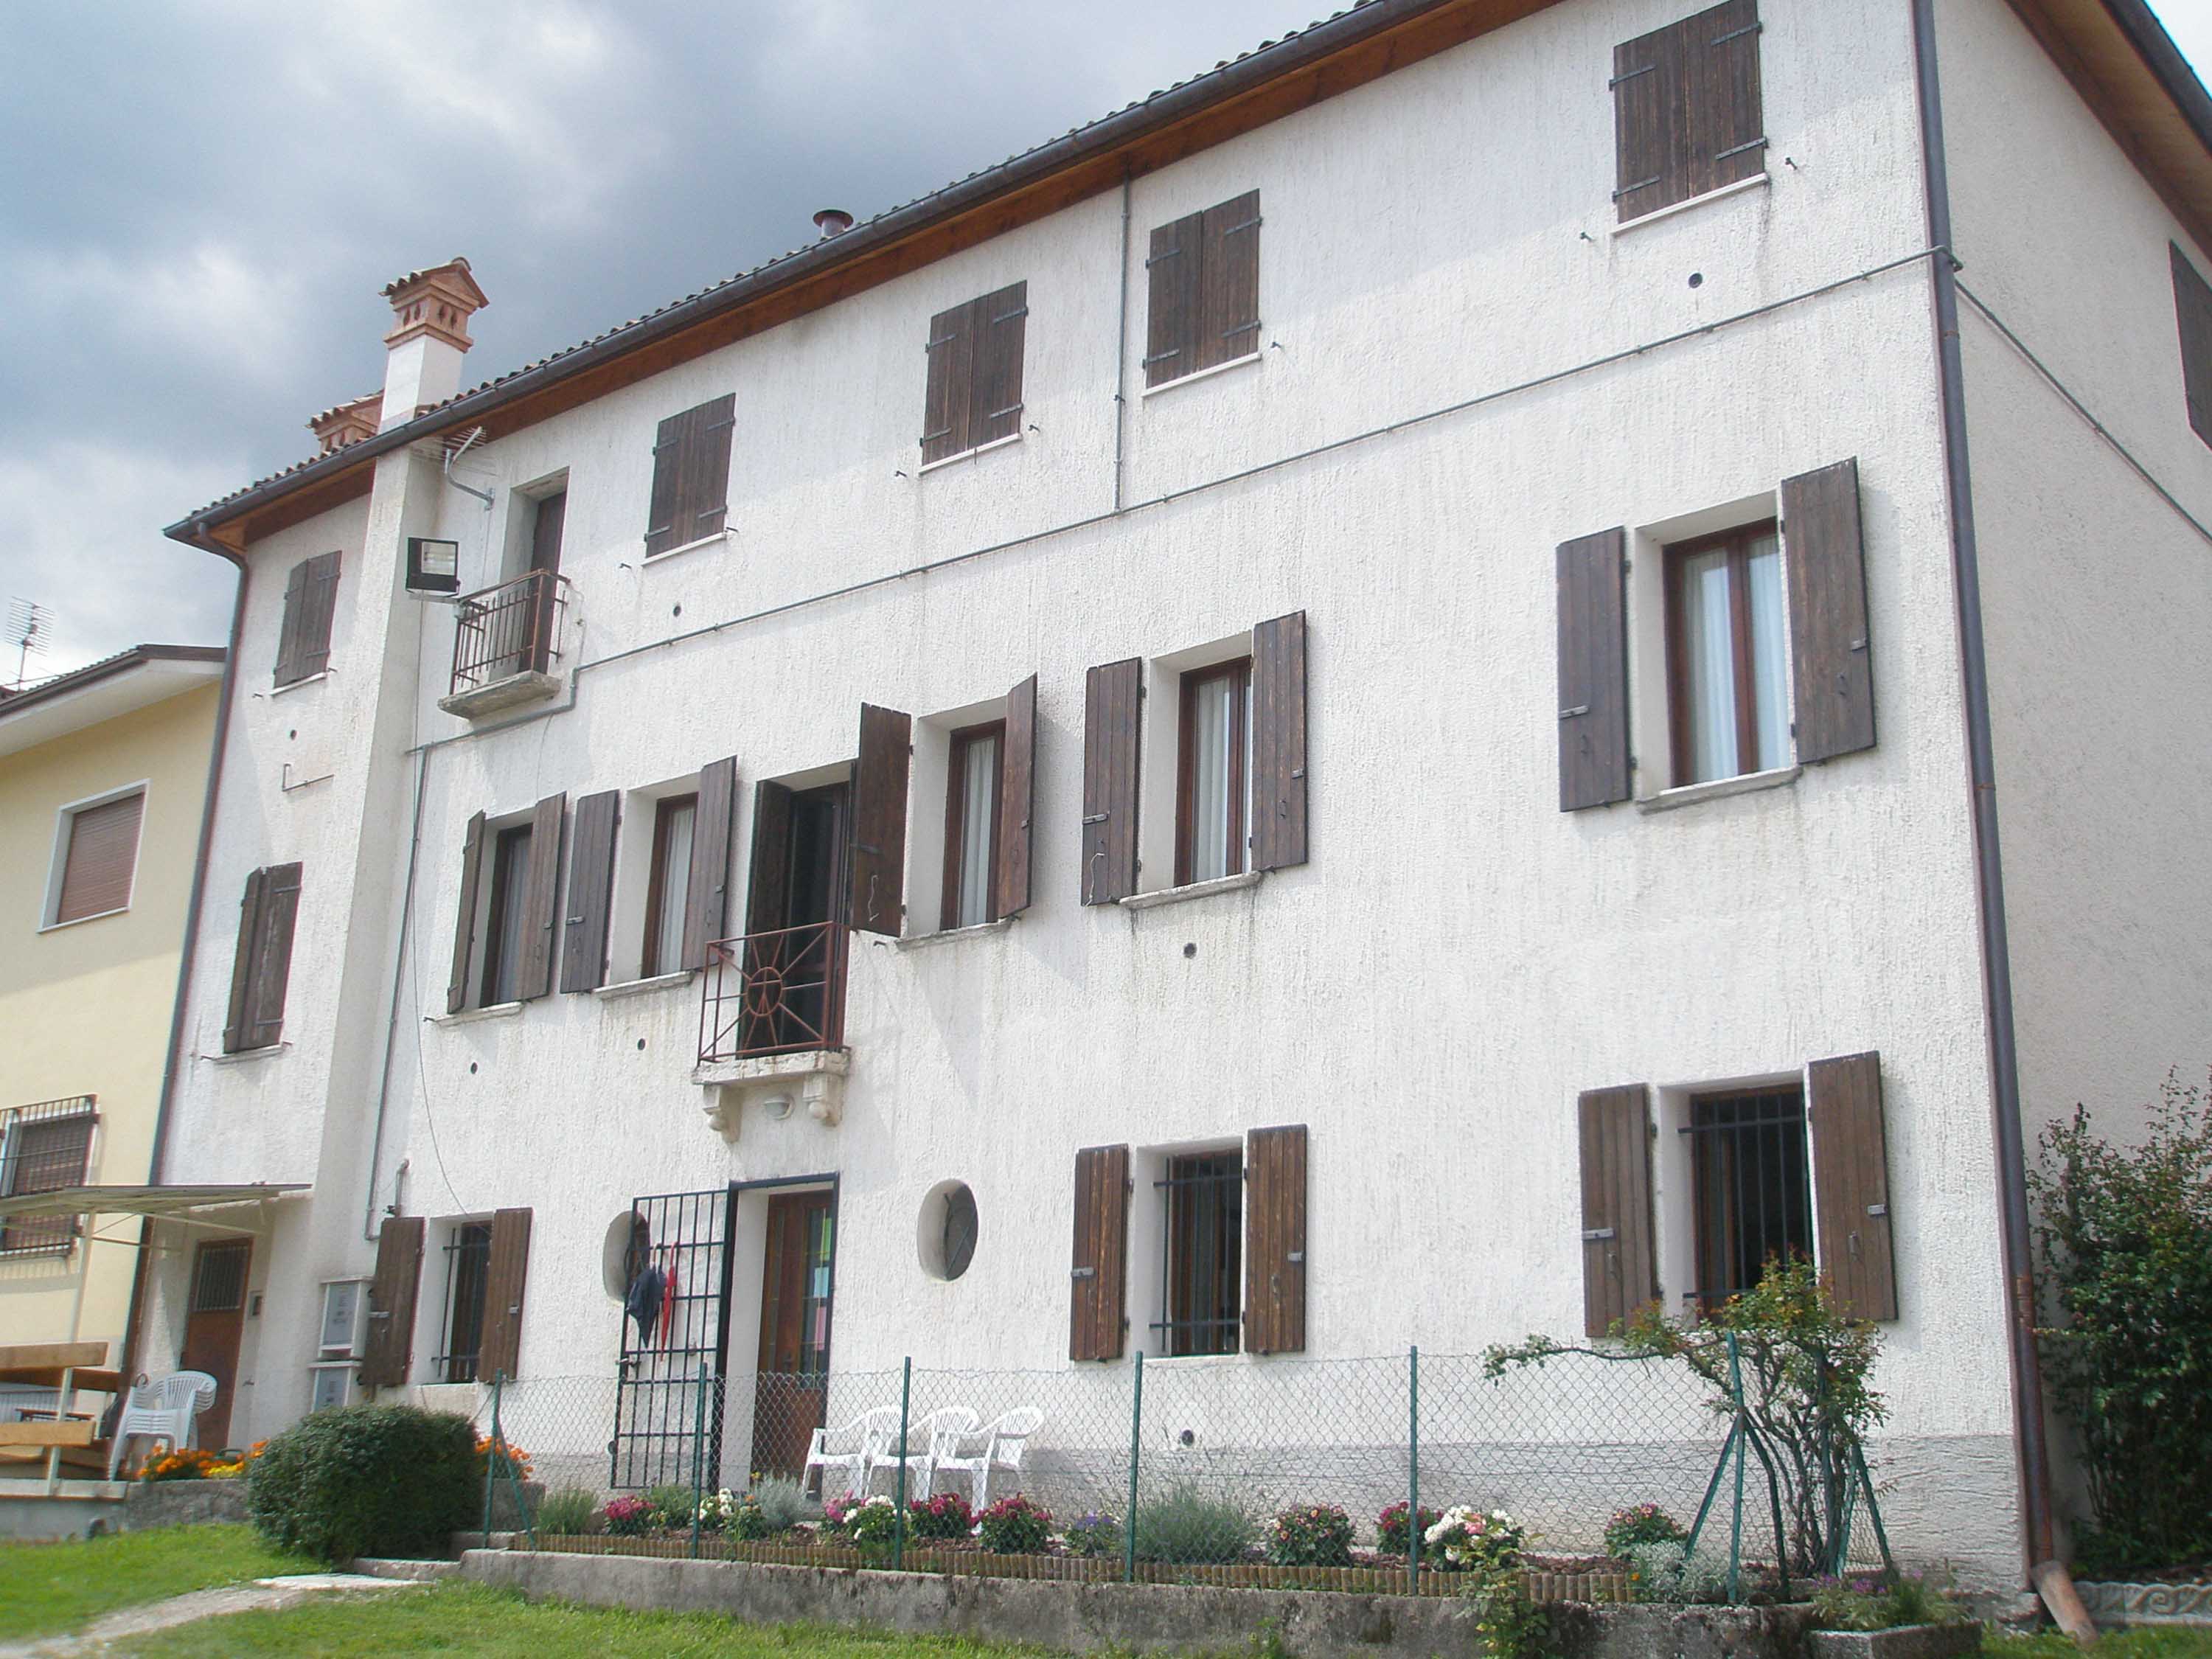 Casa Canonica di San Gregorio Magno (canonica) - San Gregorio nelle Alpi (BL)  (XV)